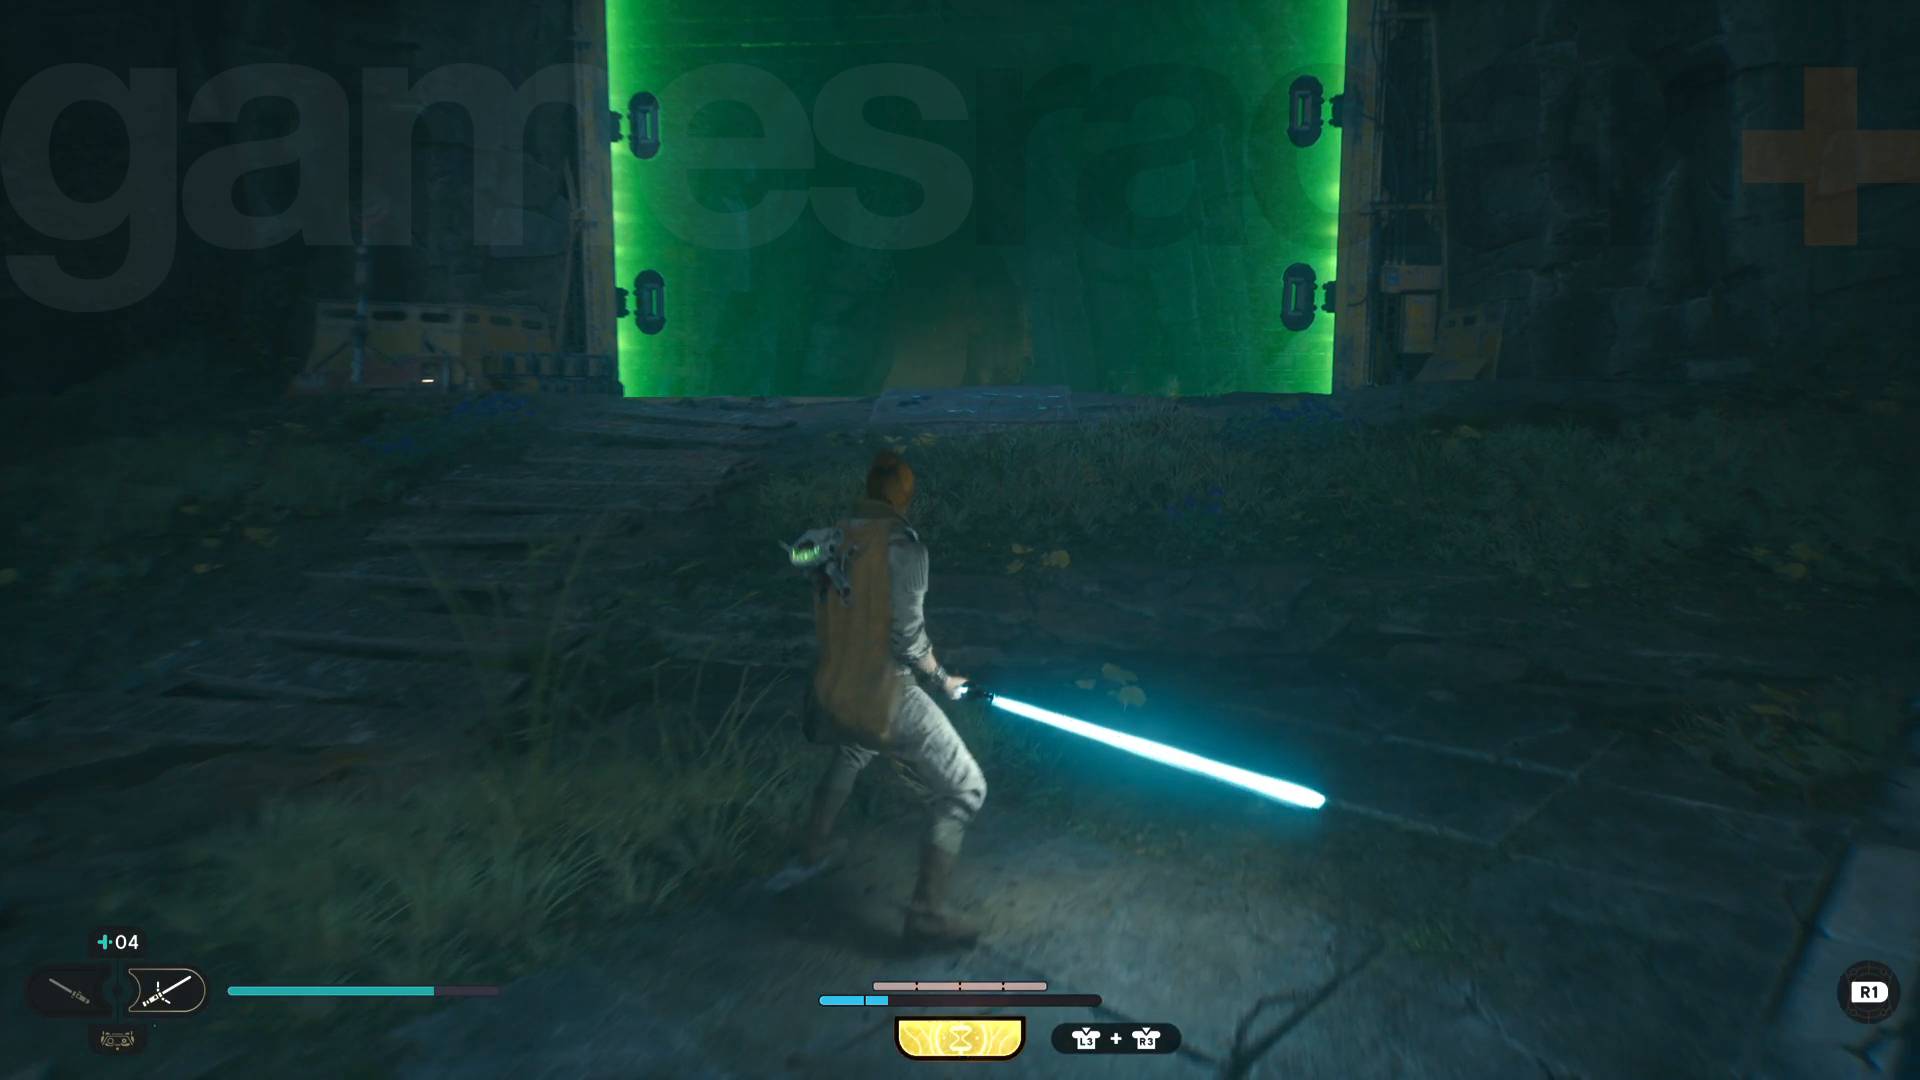 How to get past green laser walls in Star Wars Jedi Survivor | GamesRadar+